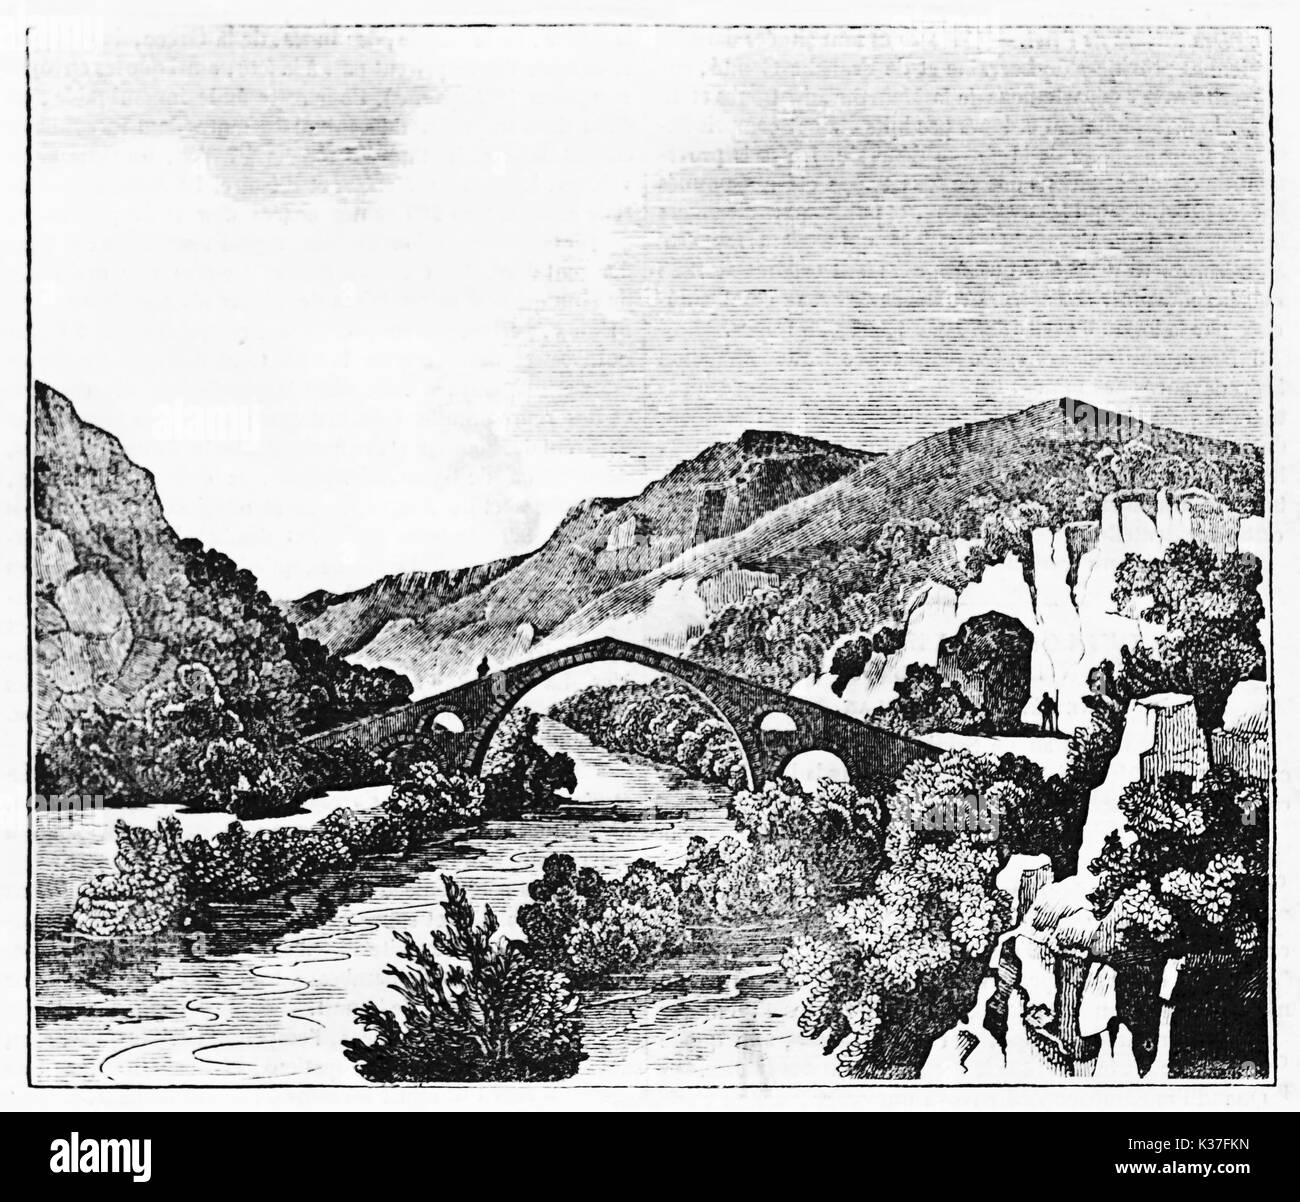 Antica gotica medievale ponte che attraversa un fiume circondato da vegetazione, Eurotas fiume in Laconia Grecia. Vecchia illustrazione di autore non identificato pubblicato il Magasin pittoresco Parigi 1834. Foto Stock